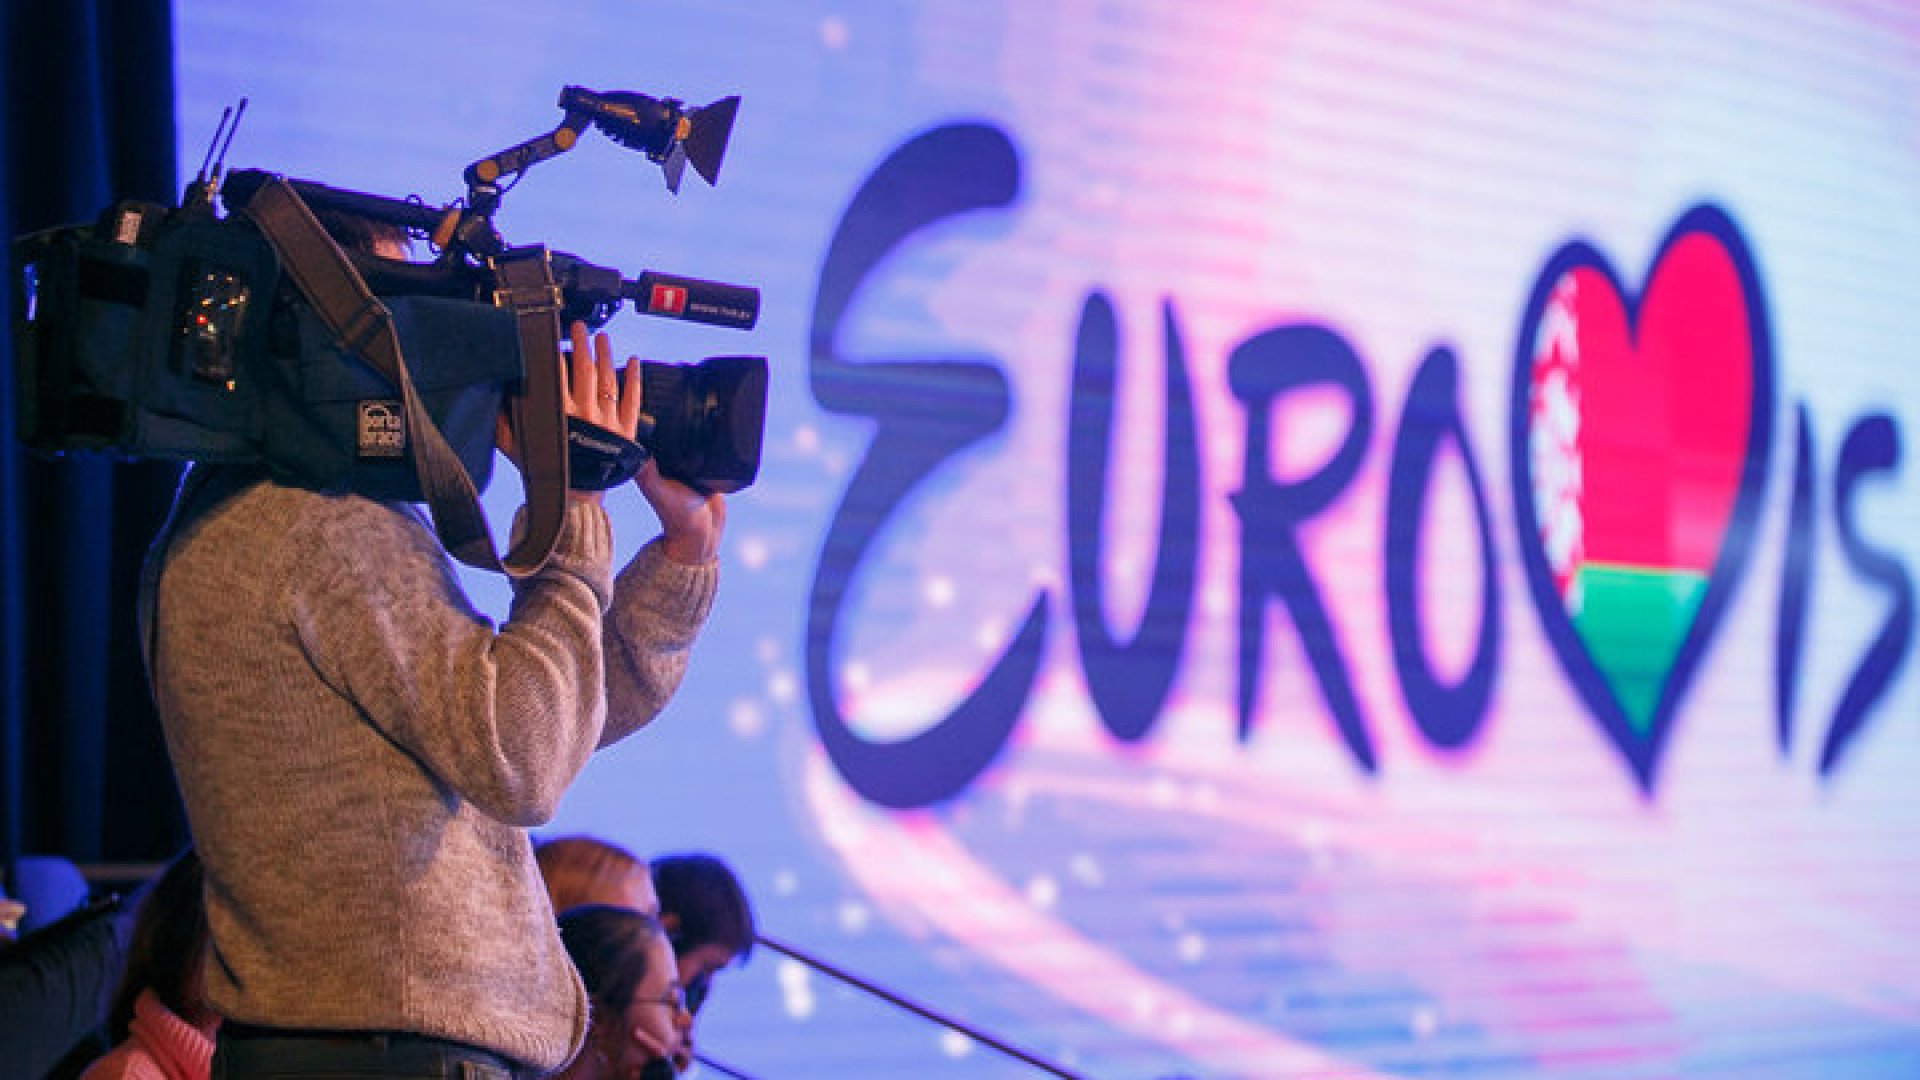 Белтелерадиокомпания объявляет кастинг ведущих детского "Евровидения"